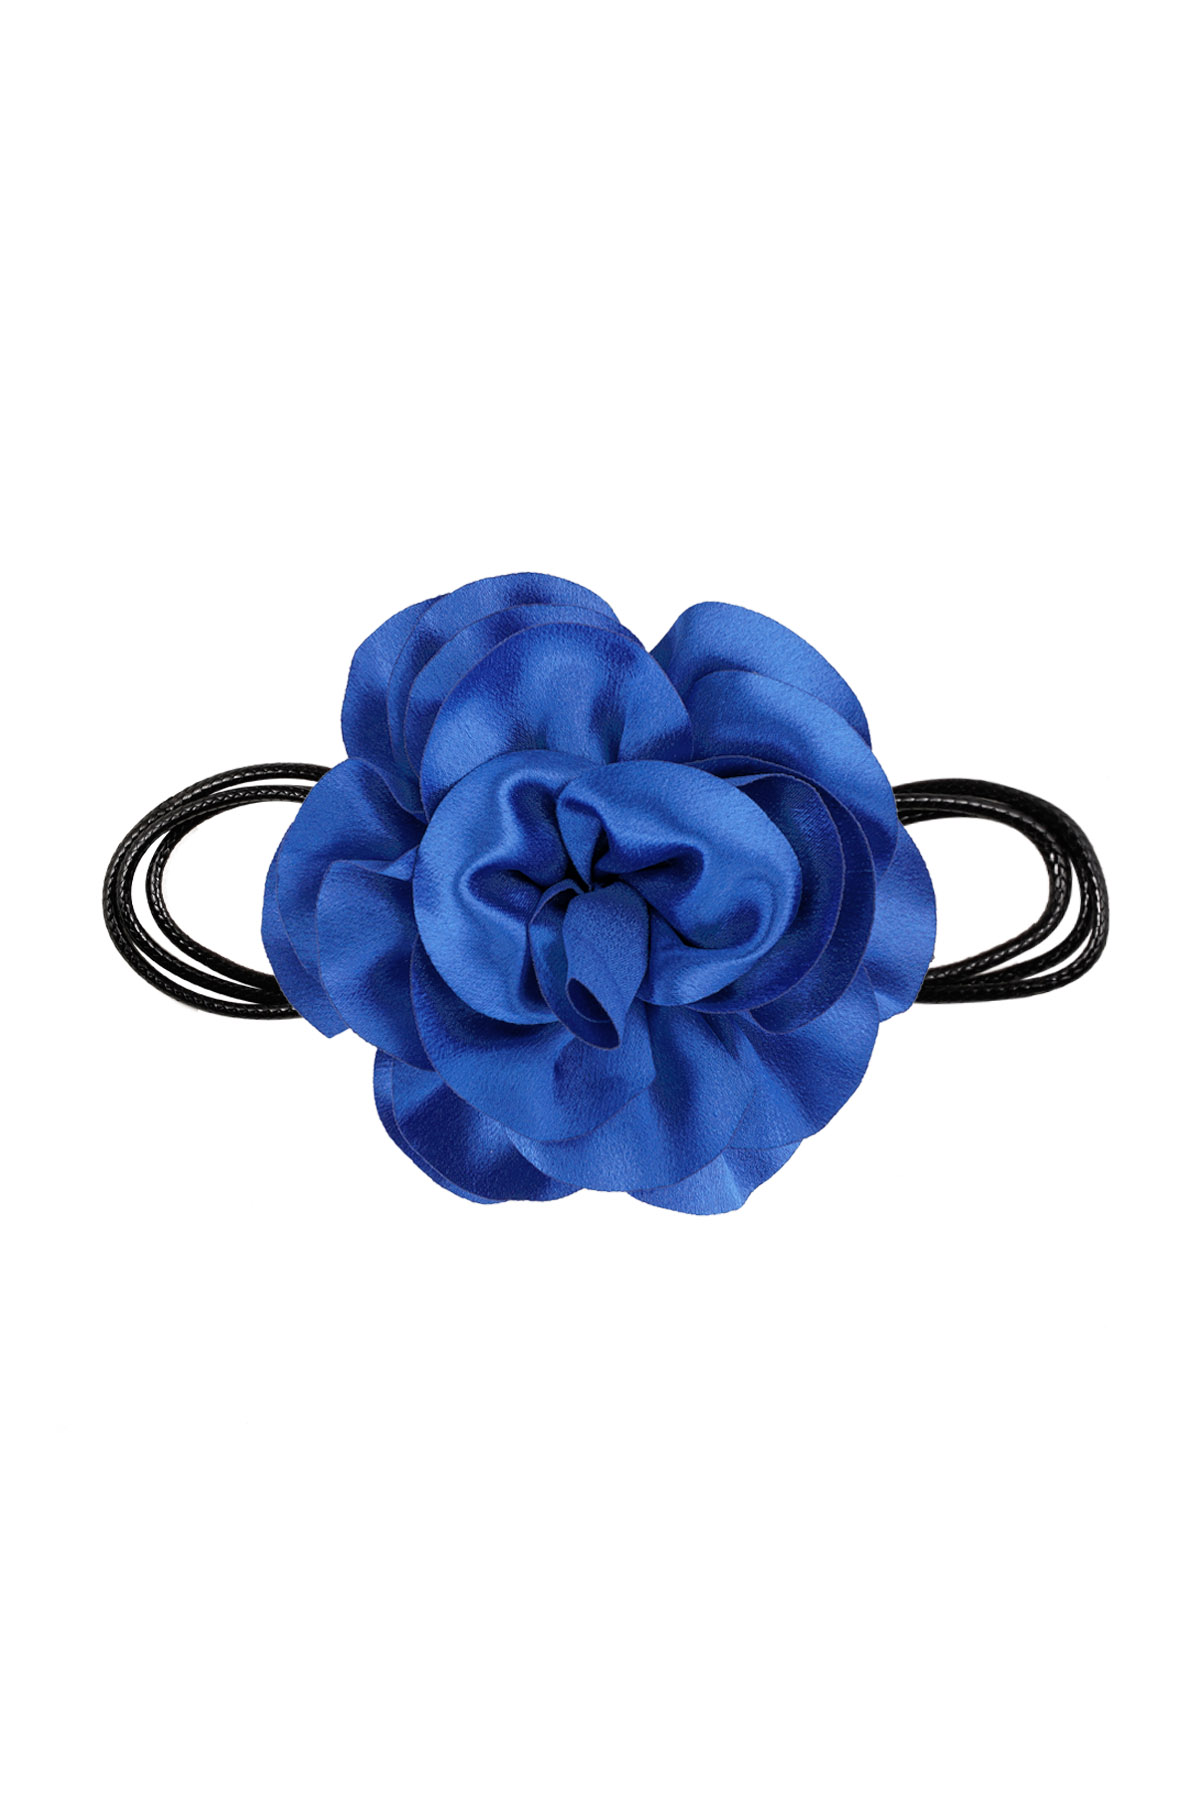 Collar cuerda flor brillante - azul brillante h5 